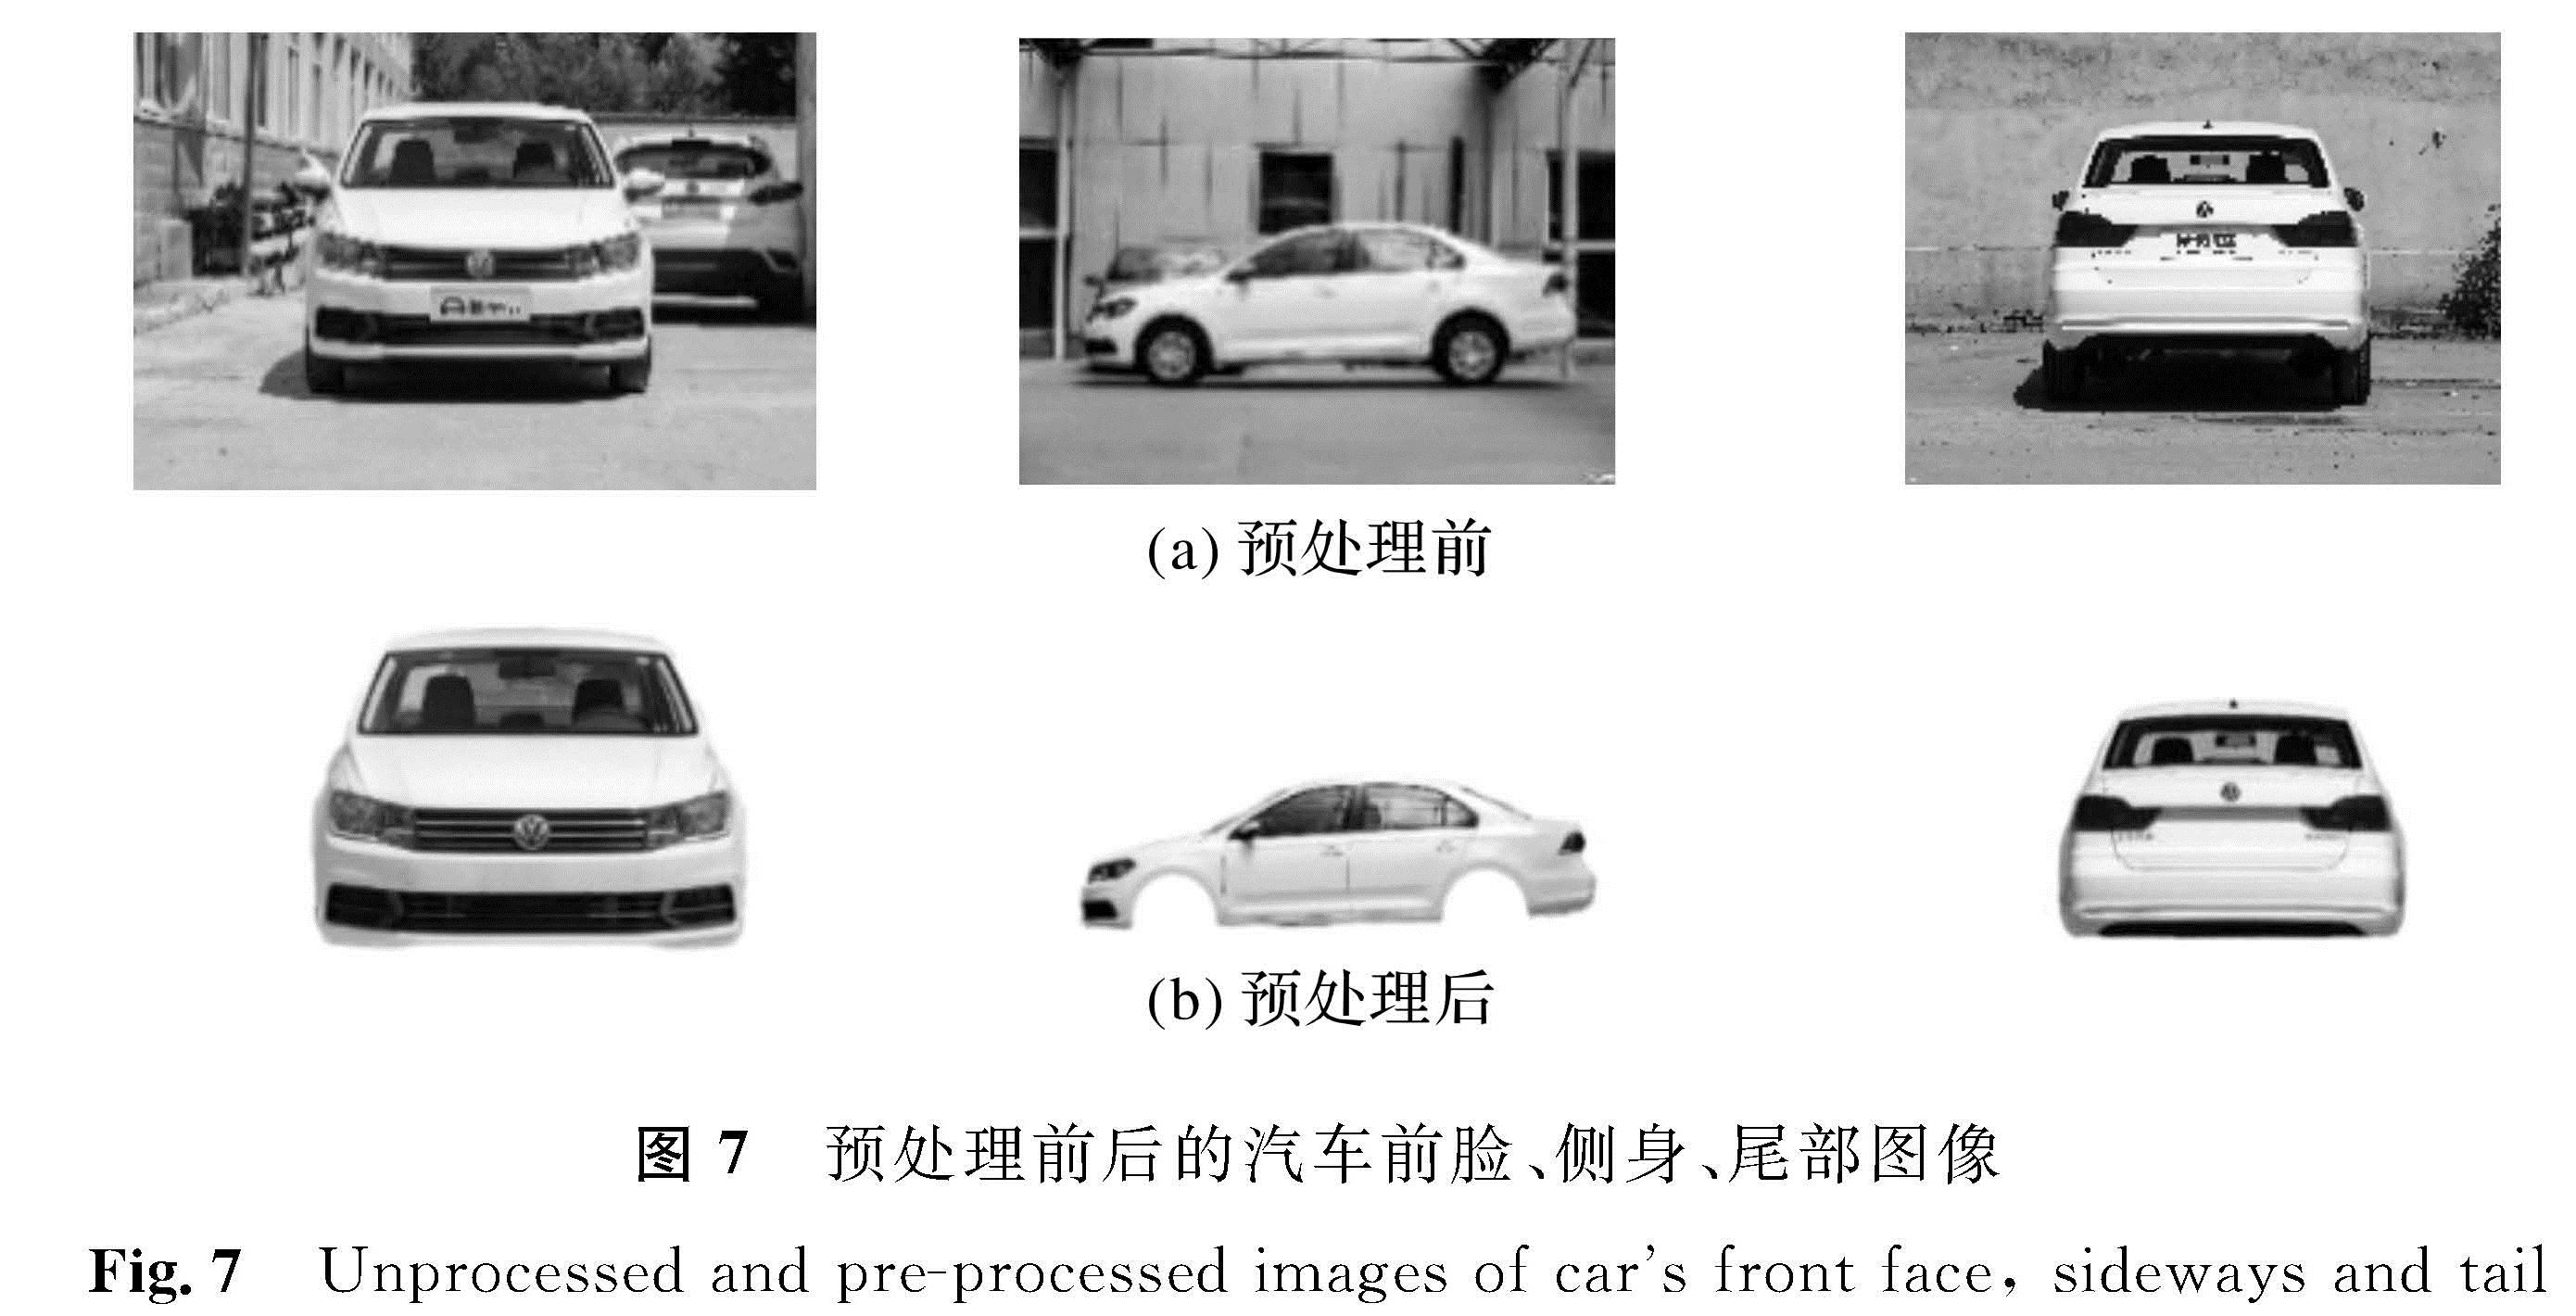 图7 预处理前后的汽车前脸、侧身、尾部图像<br/>Fig.7 Unprocessed and pre-processed images of car's front face, sideways and tail